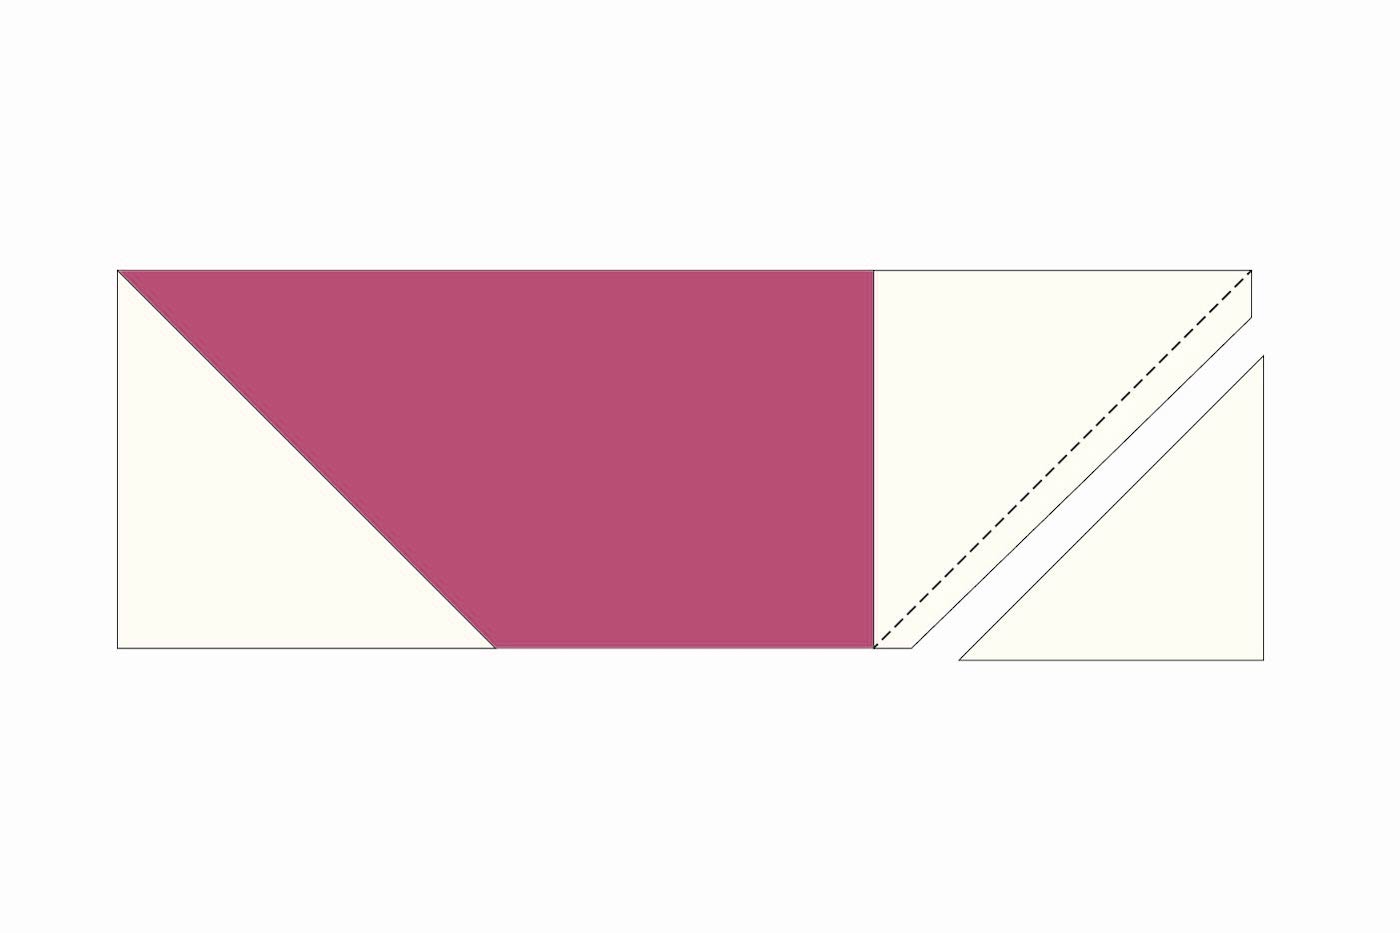 illustration de courtepointe avec des carrés et des rectangles en jaune, rose et bleu